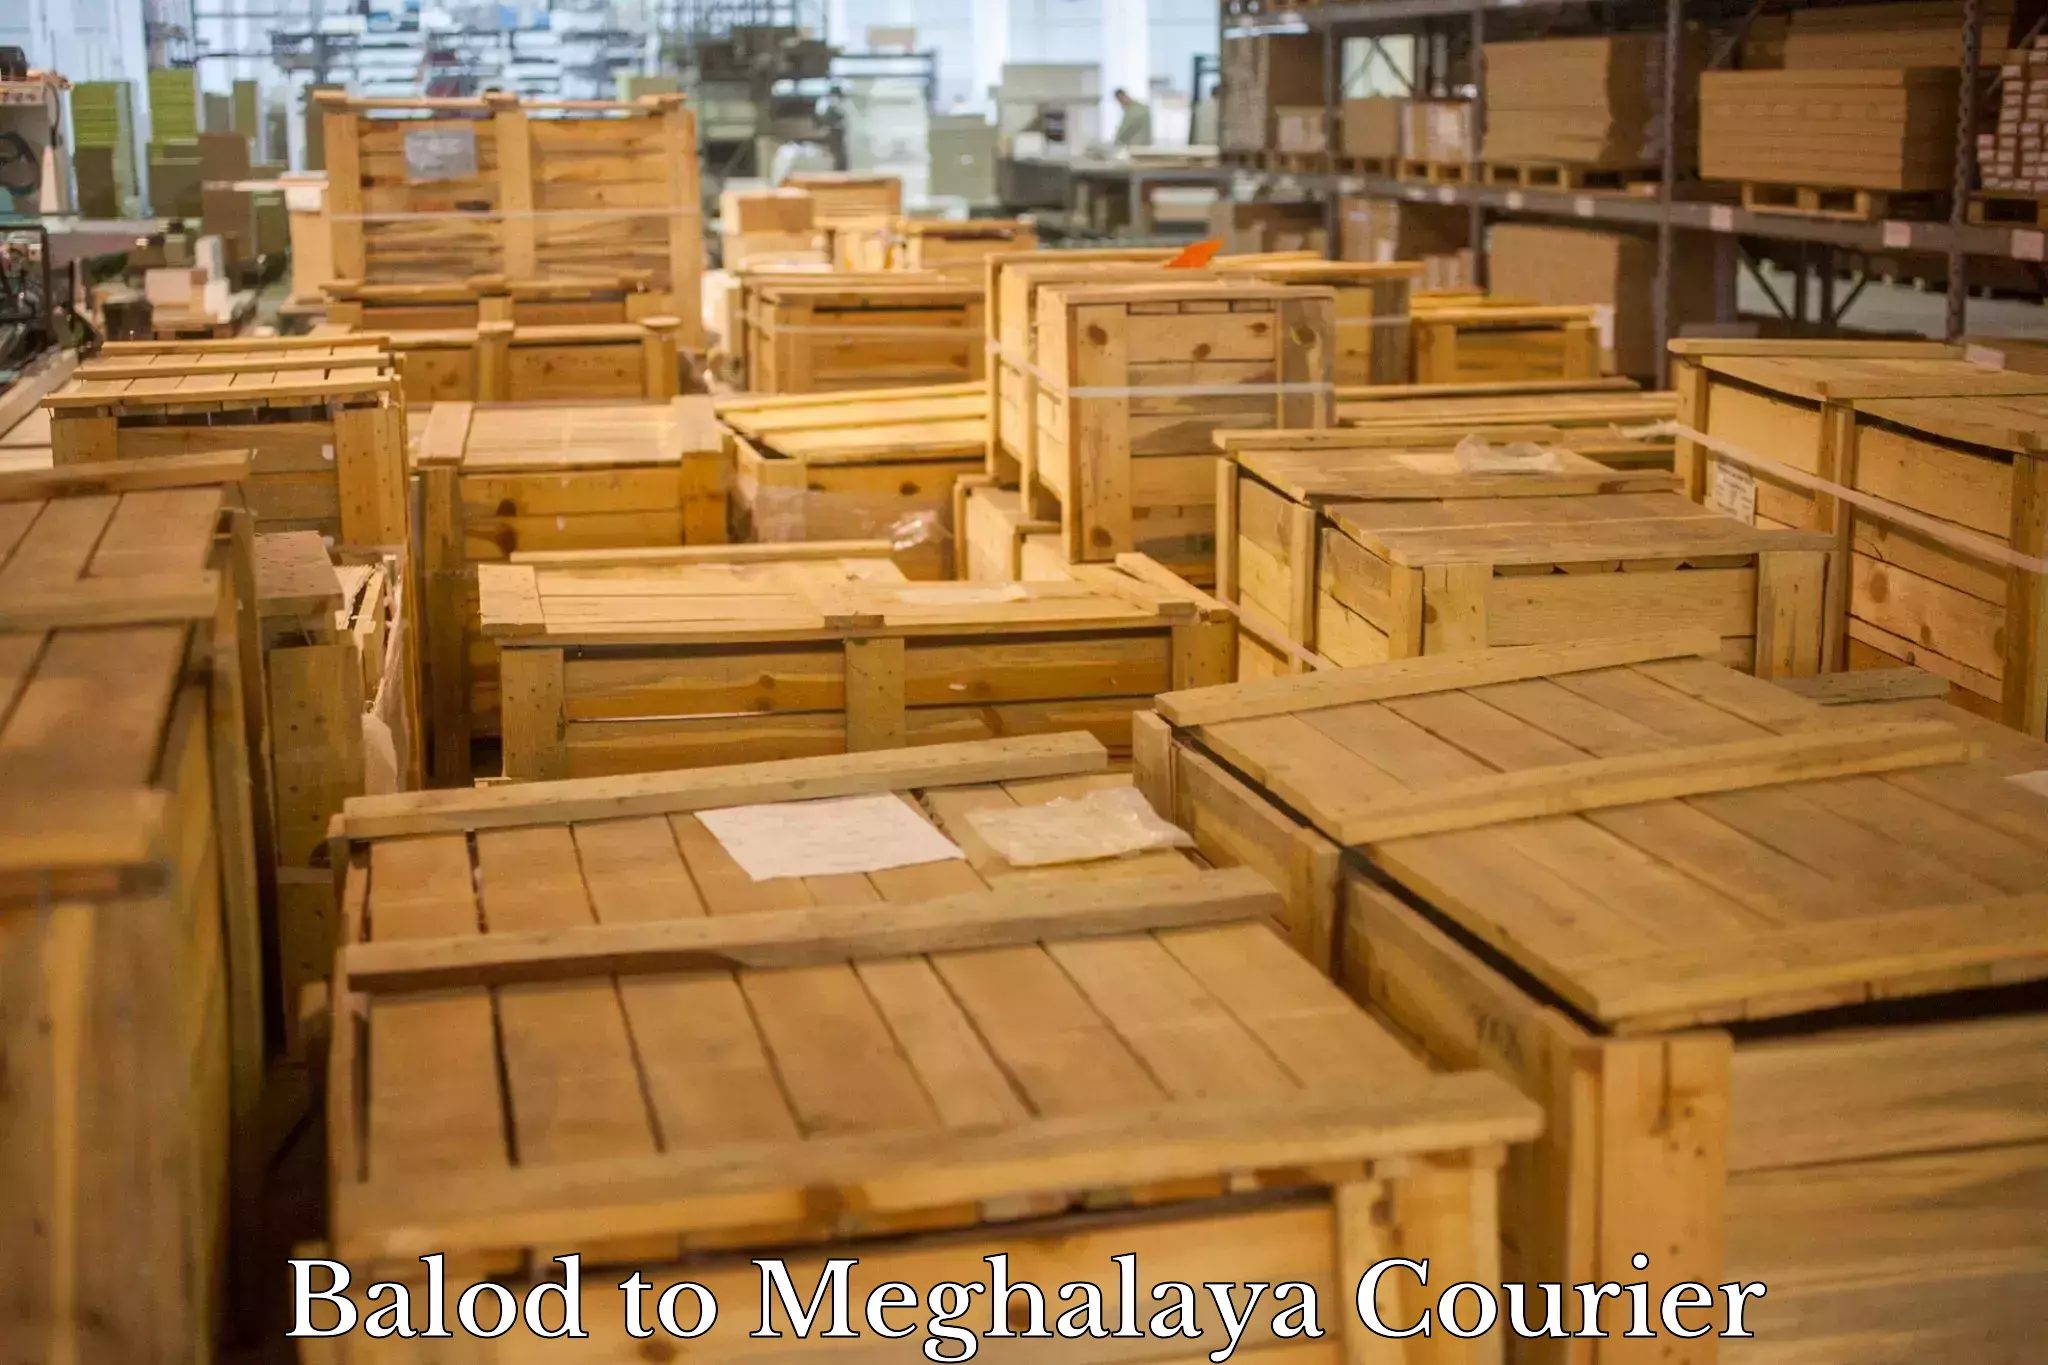 Regular parcel service Balod to Meghalaya